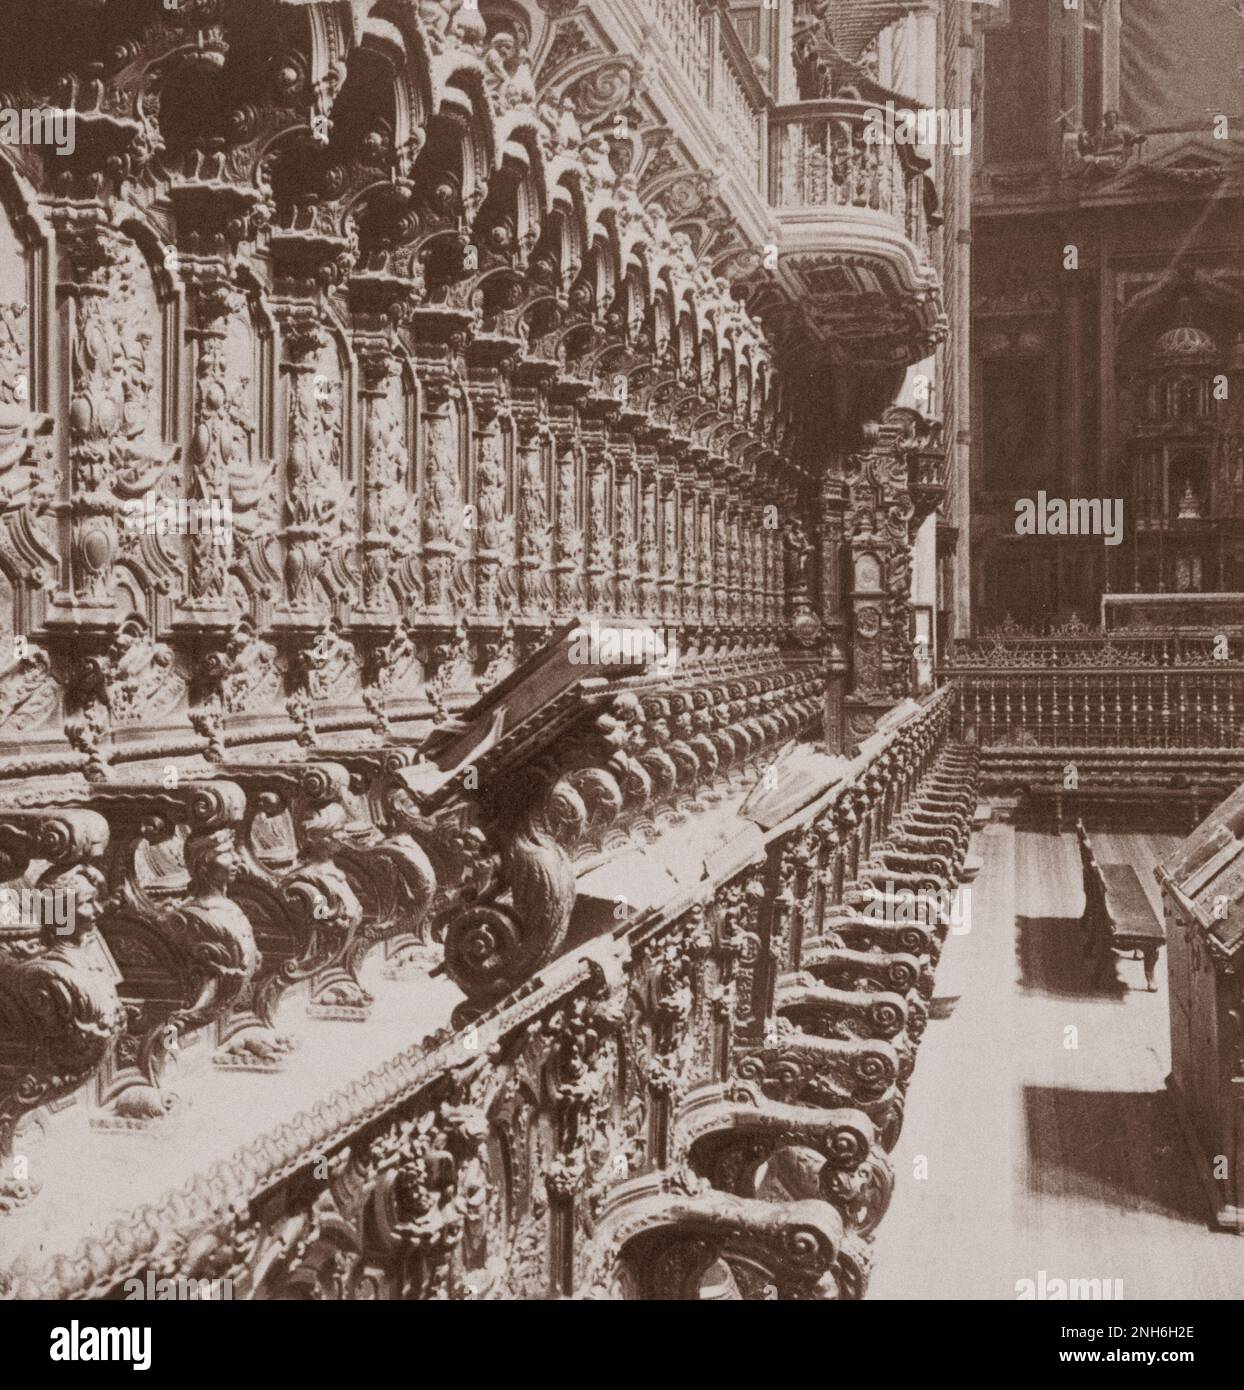 Bischofssitz und Chor der Moschee-Kathedrale von Córdoba (Mezquita). Cordova, Spanien. 1902 Stockfoto